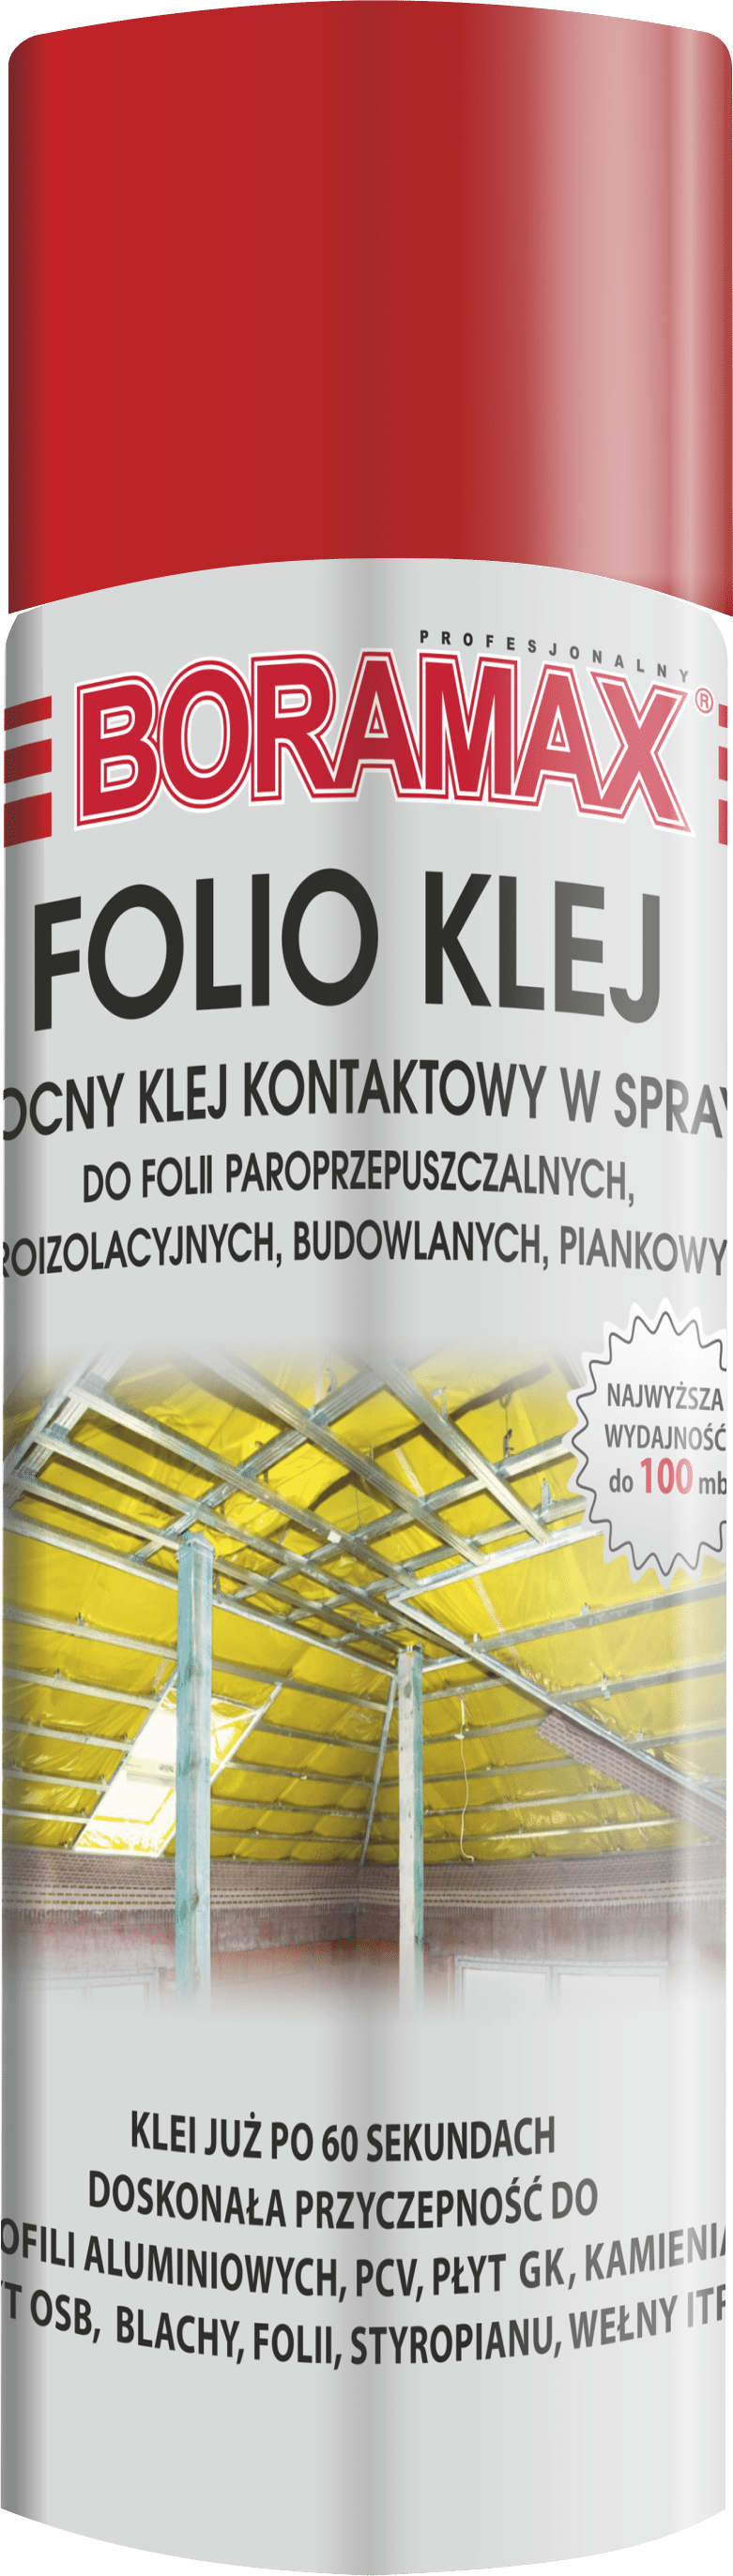 BORAMAX FOLIO KLEJ W SPRAYU 500 ml (12) (Zdjęcie 1)